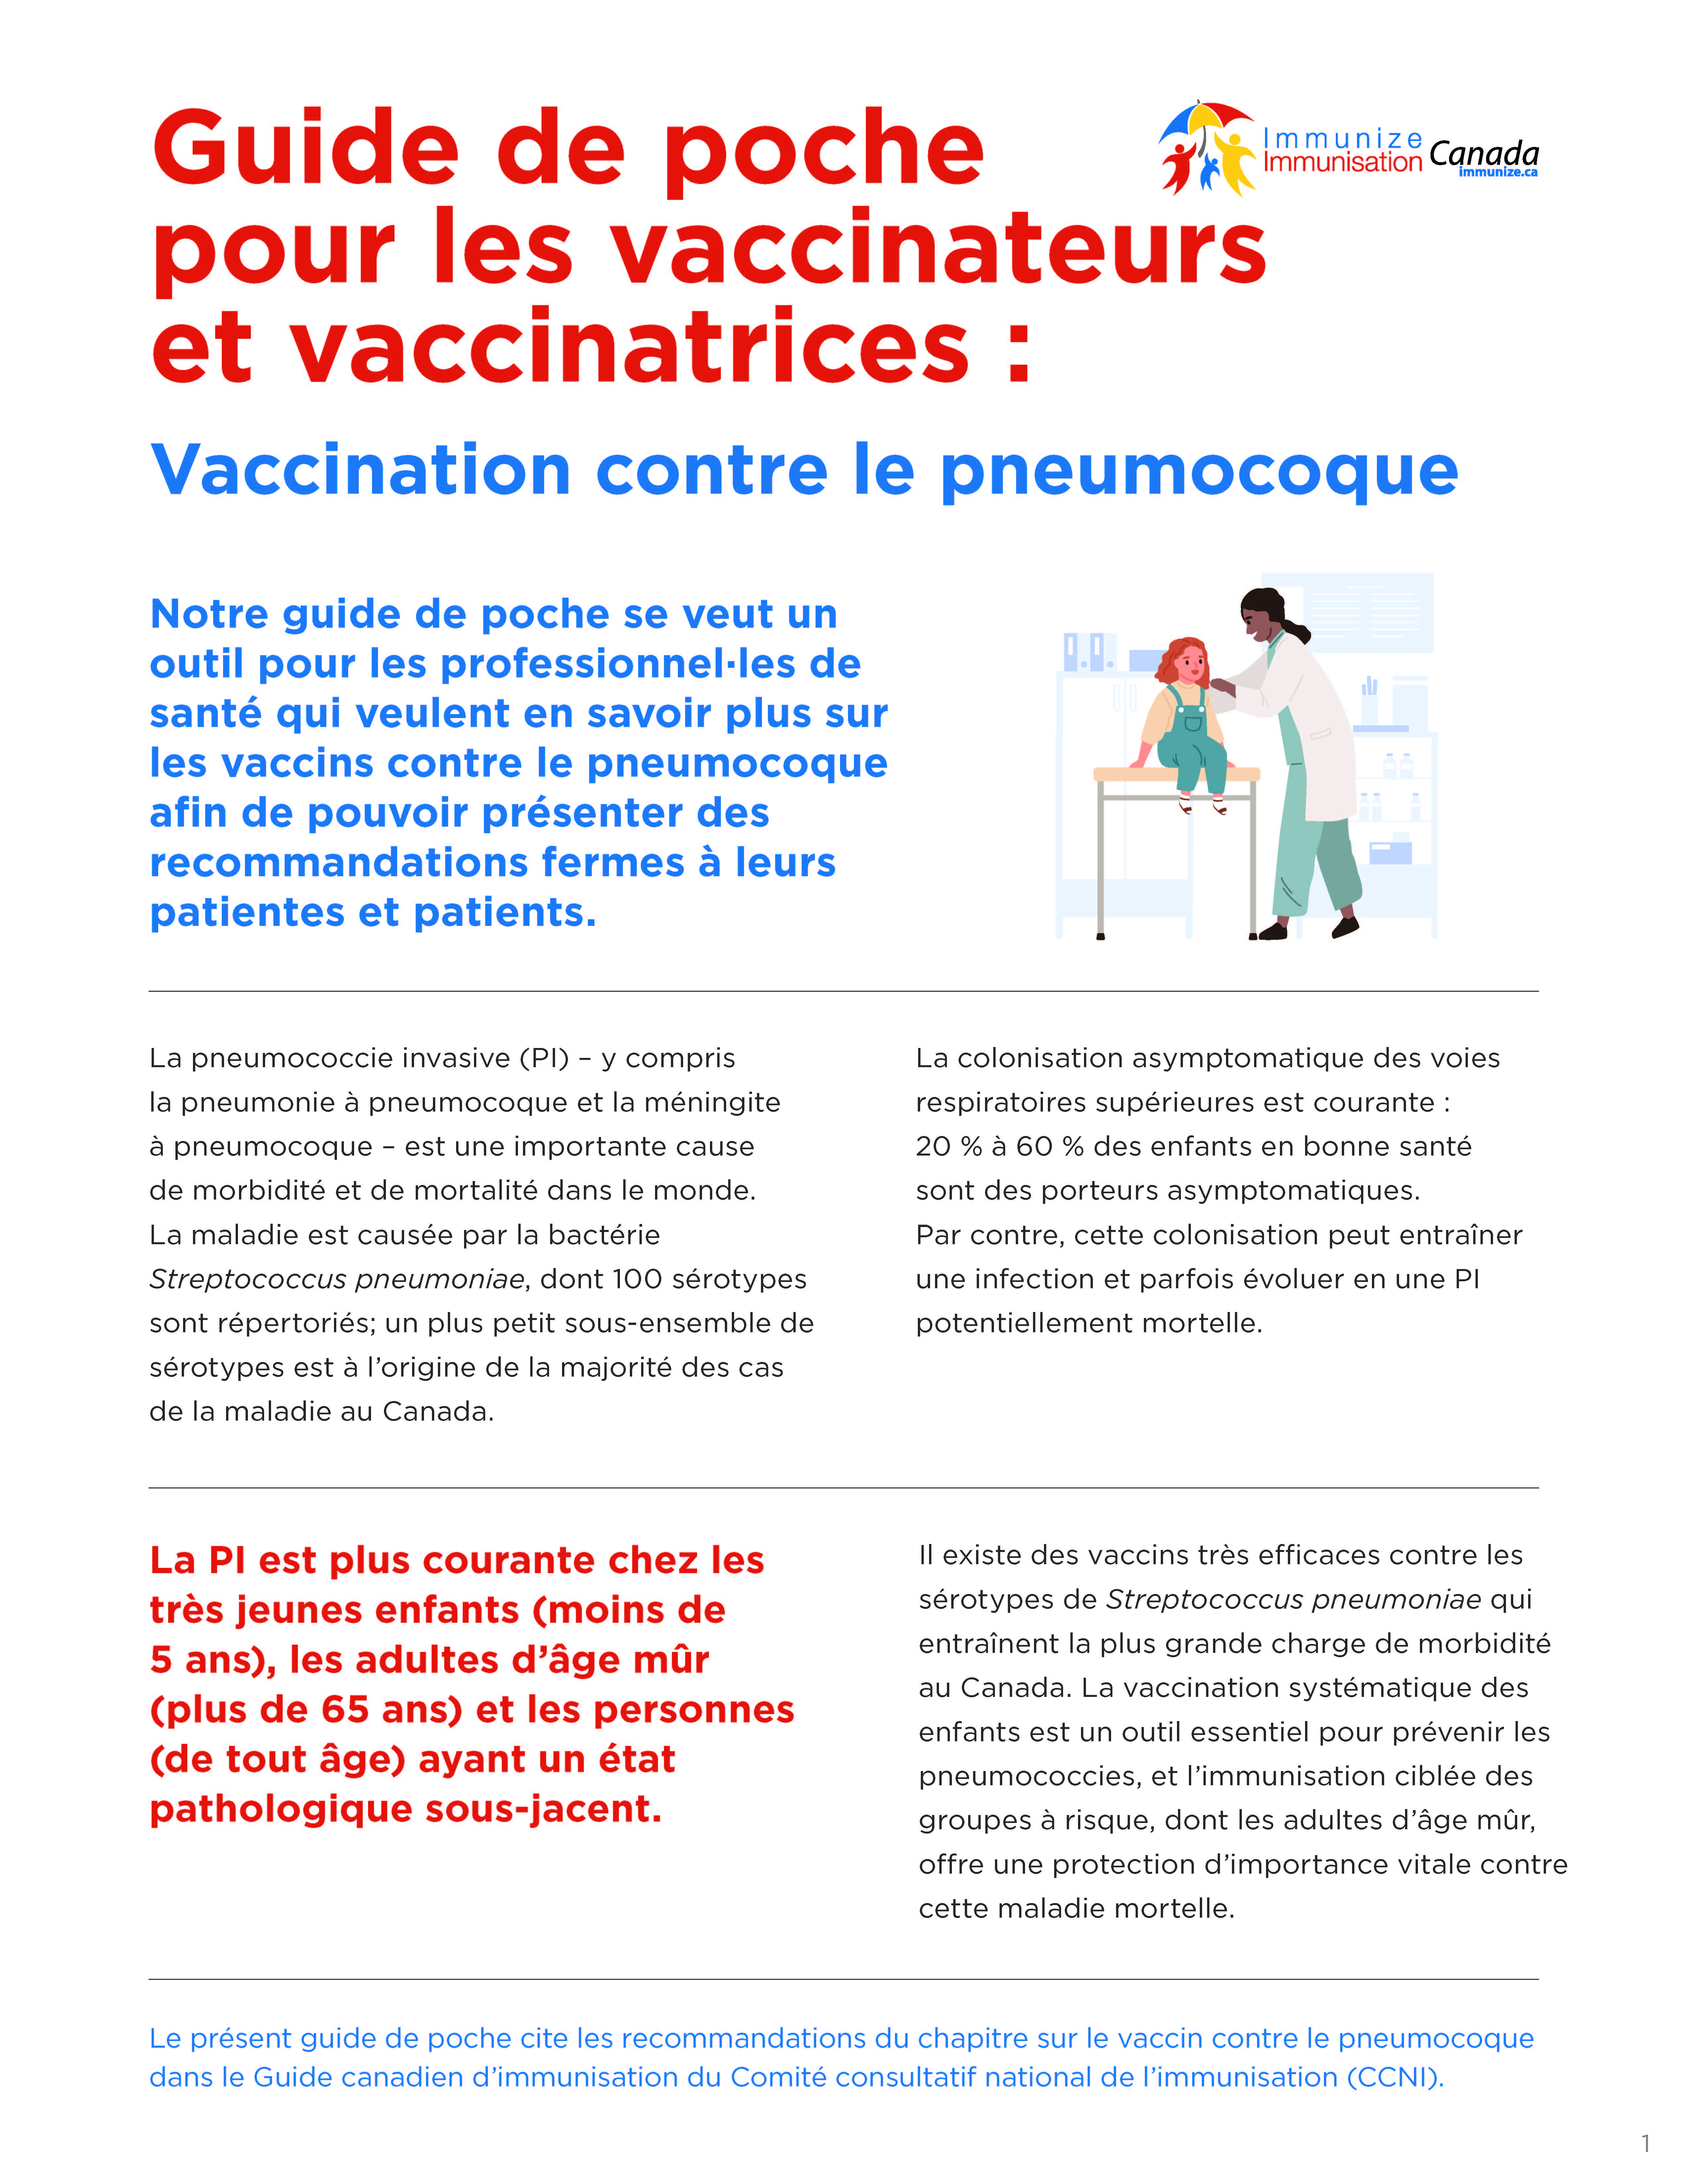 Guide de poche pour les vaccinateurs et vaccinatrices : Vaccination contre le pneumocoque